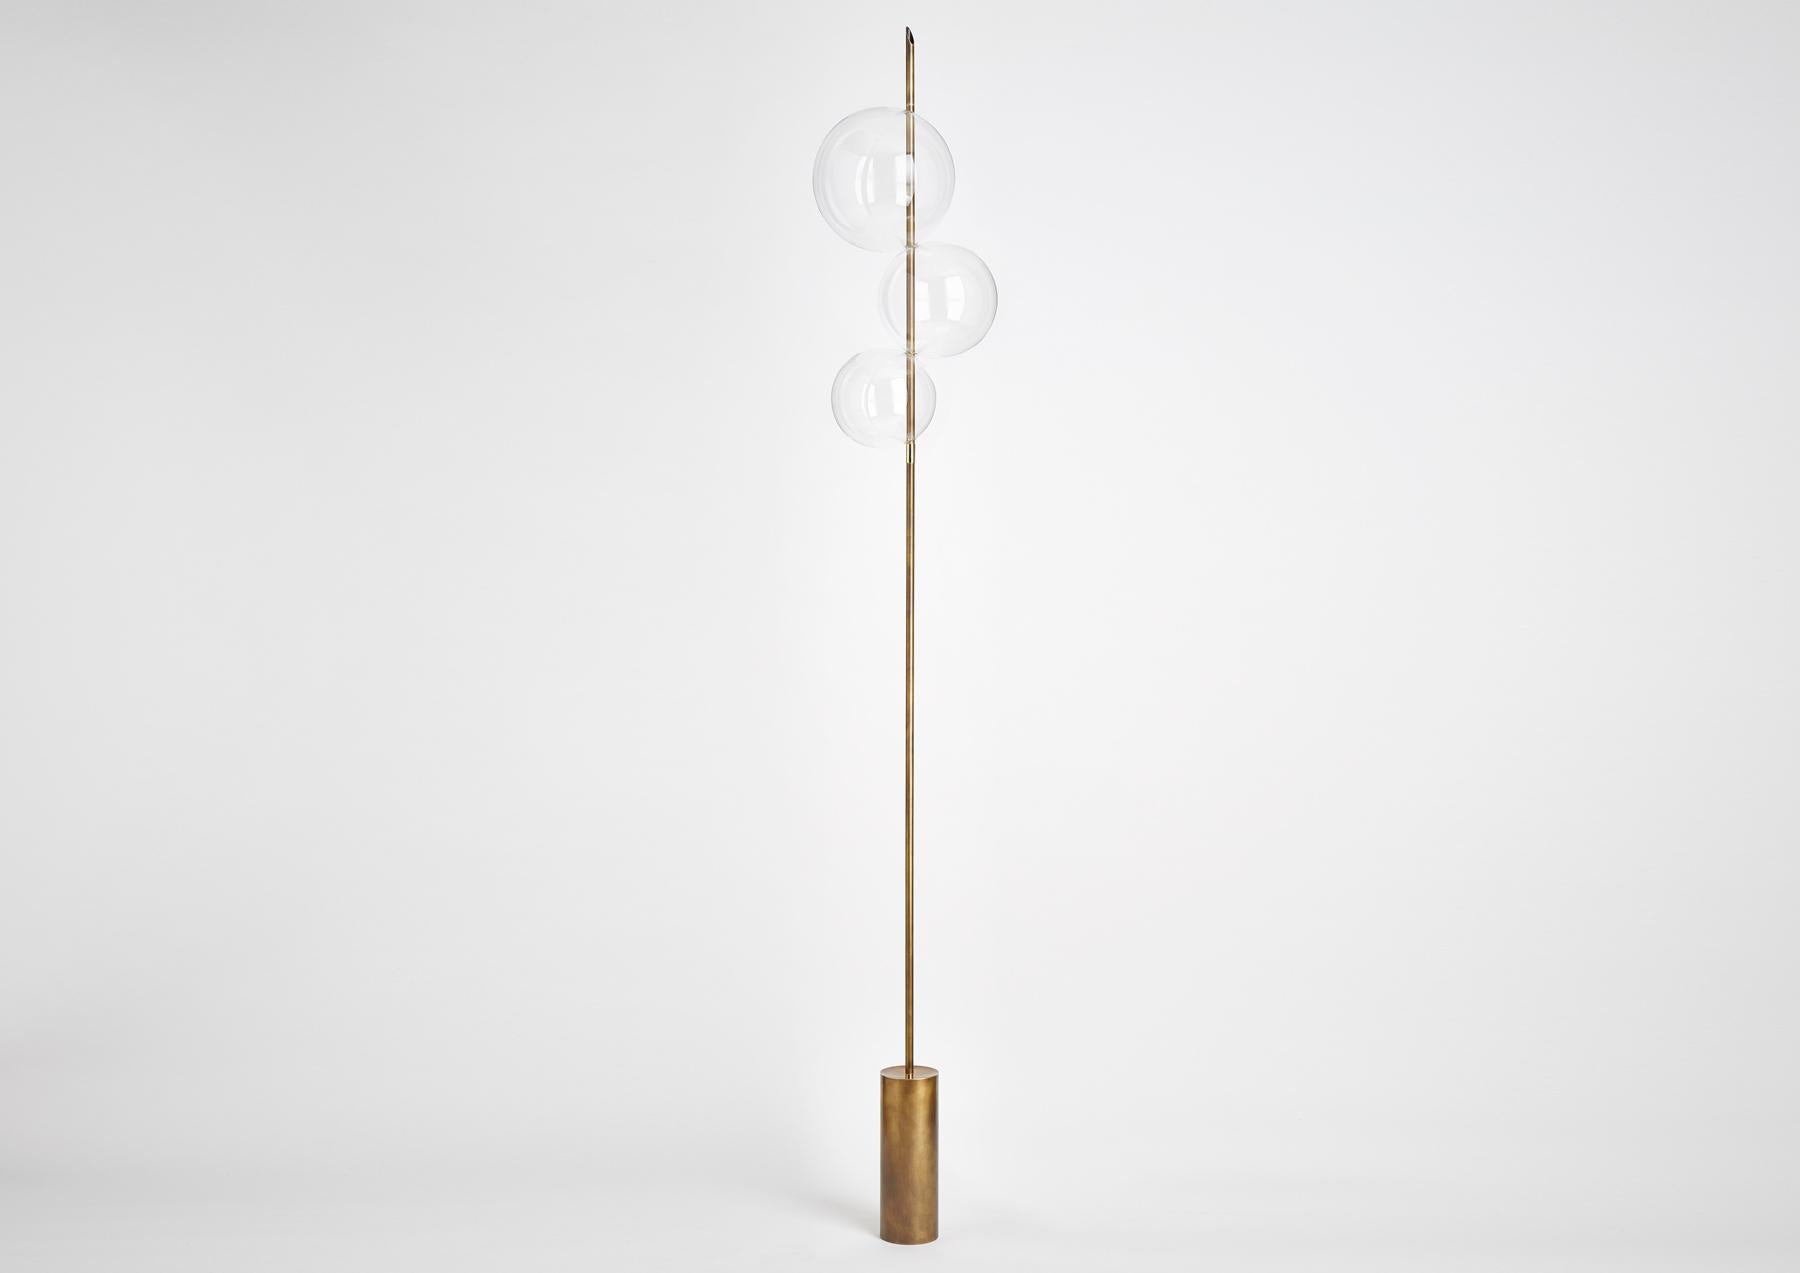 Inspiré par des morceaux de grêle, Grandine Three Lights s est un lampadaire contemporain minimal composé de trois orbes touchantes en verre soufflé à la main, positionnées de manière à donner l'impression de boules de glace qui ont fondu ensemble